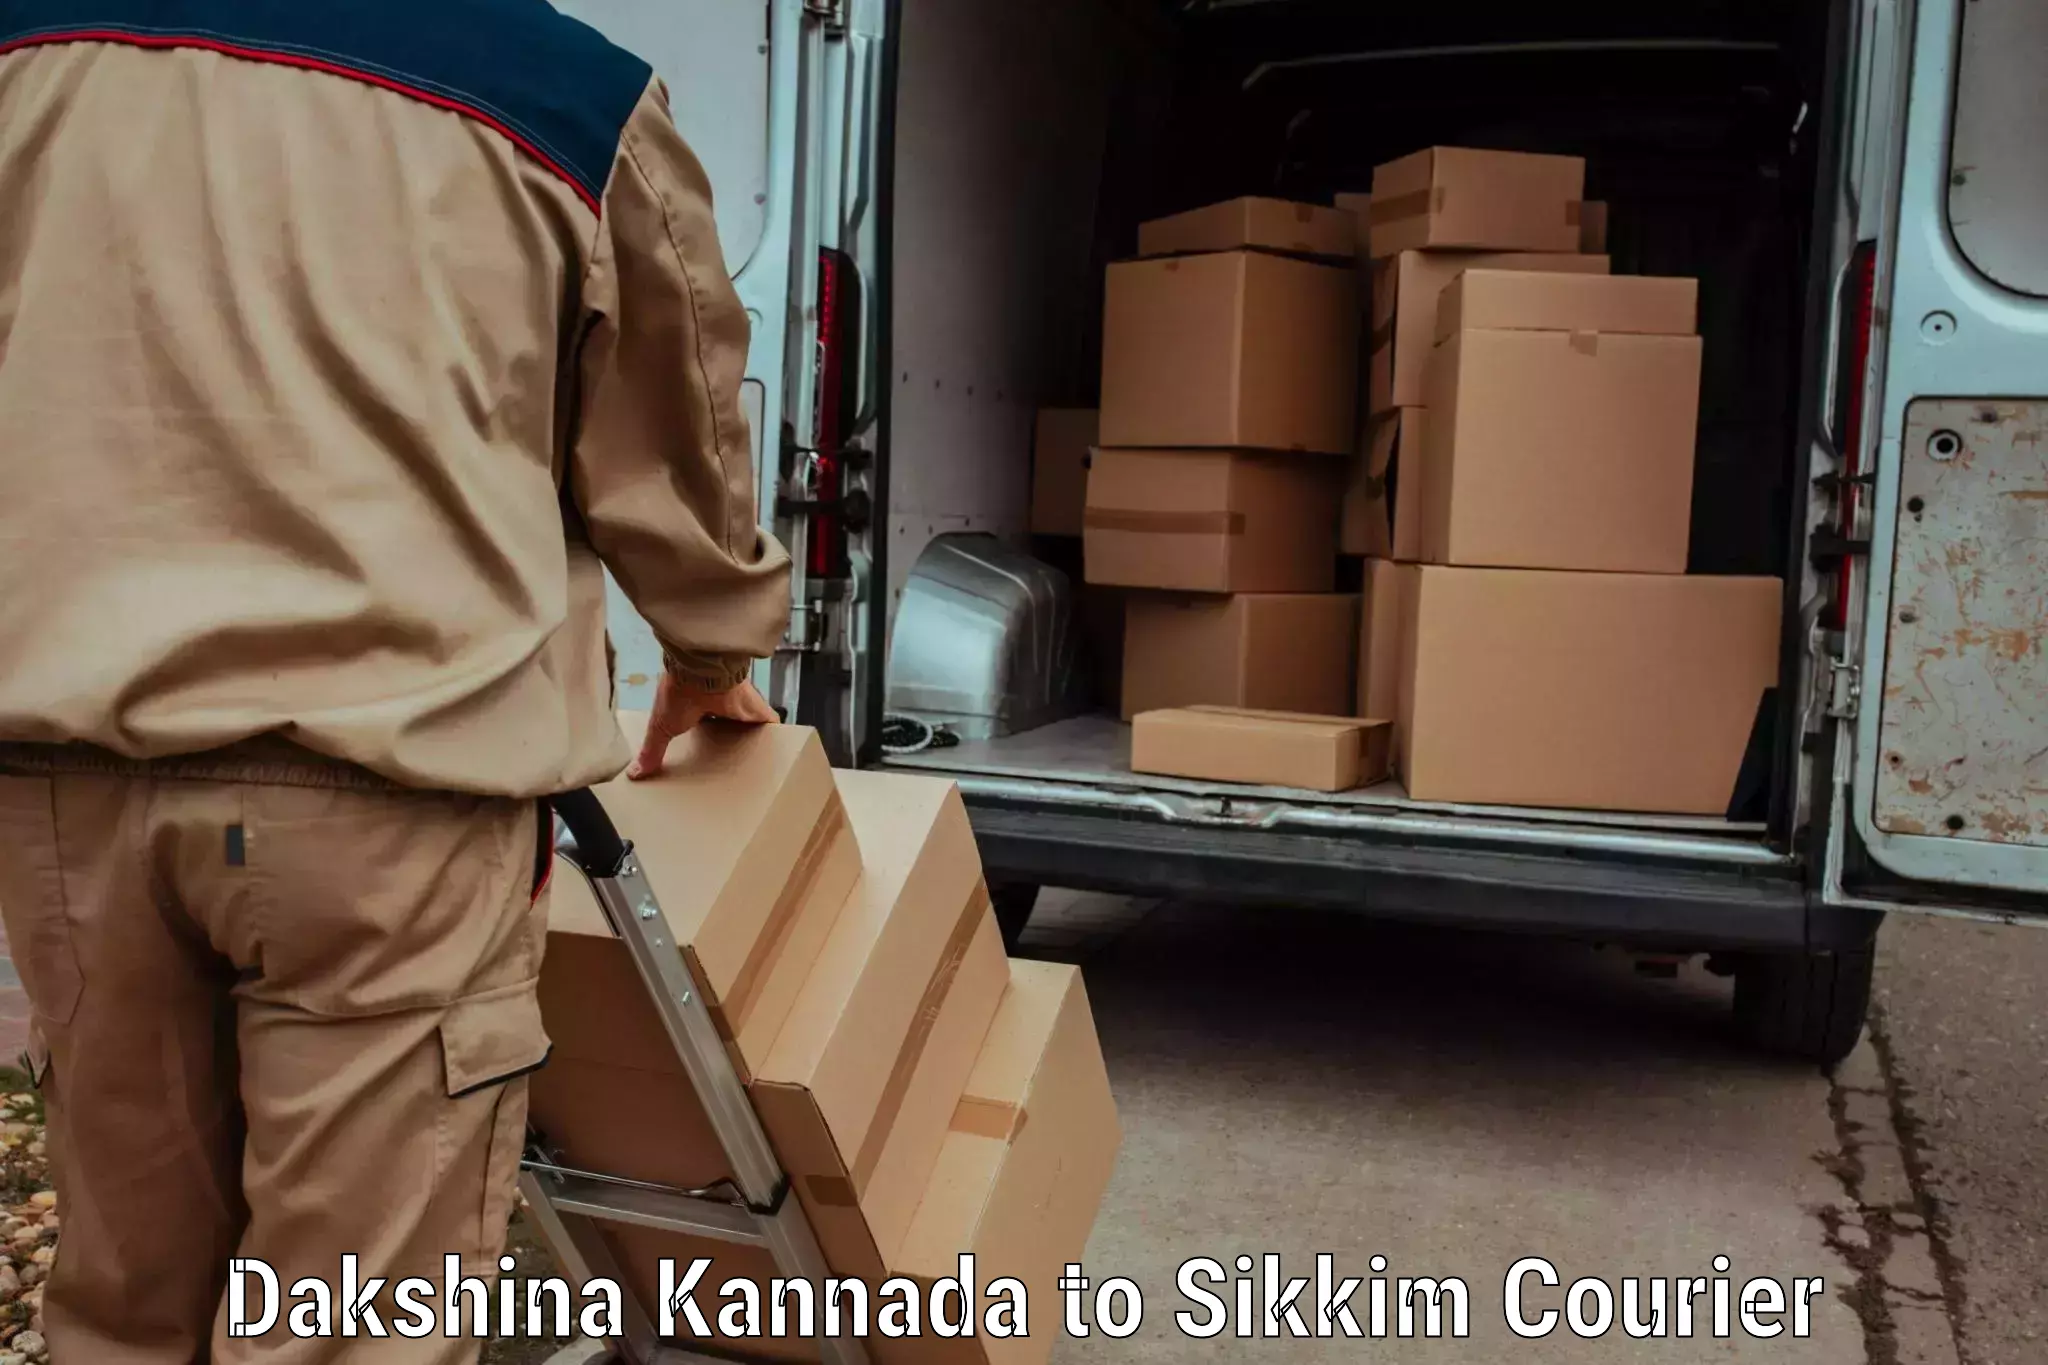 Global courier networks Dakshina Kannada to Pelling